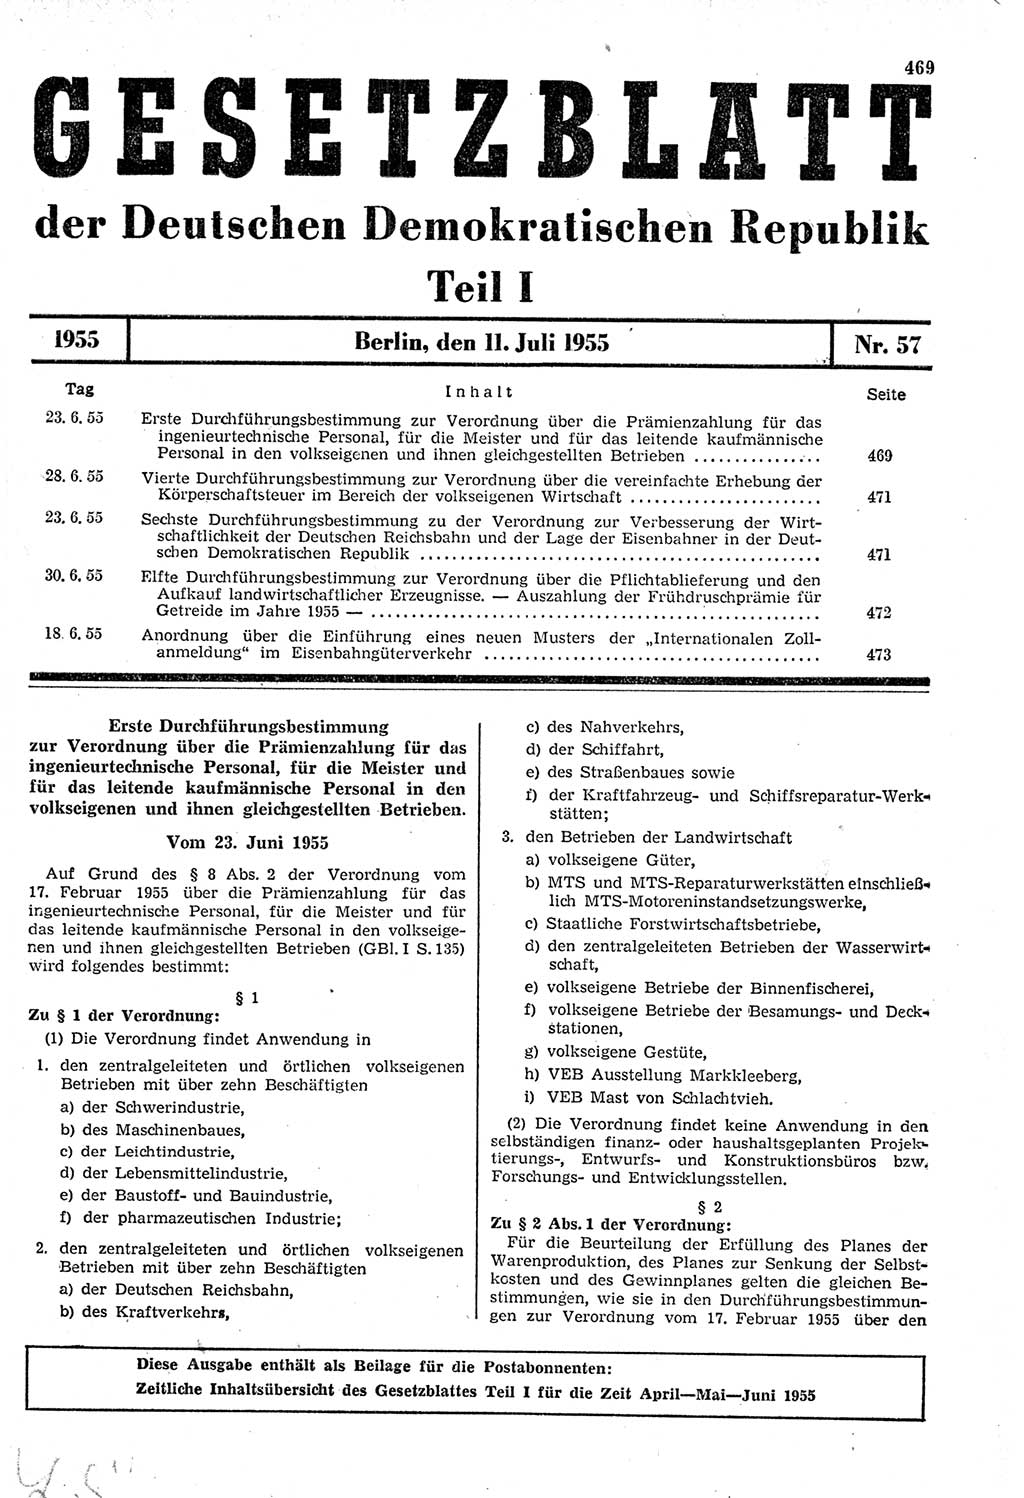 Gesetzblatt (GBl.) der Deutschen Demokratischen Republik (DDR) Teil Ⅰ 1955, Seite 469 (GBl. DDR Ⅰ 1955, S. 469)